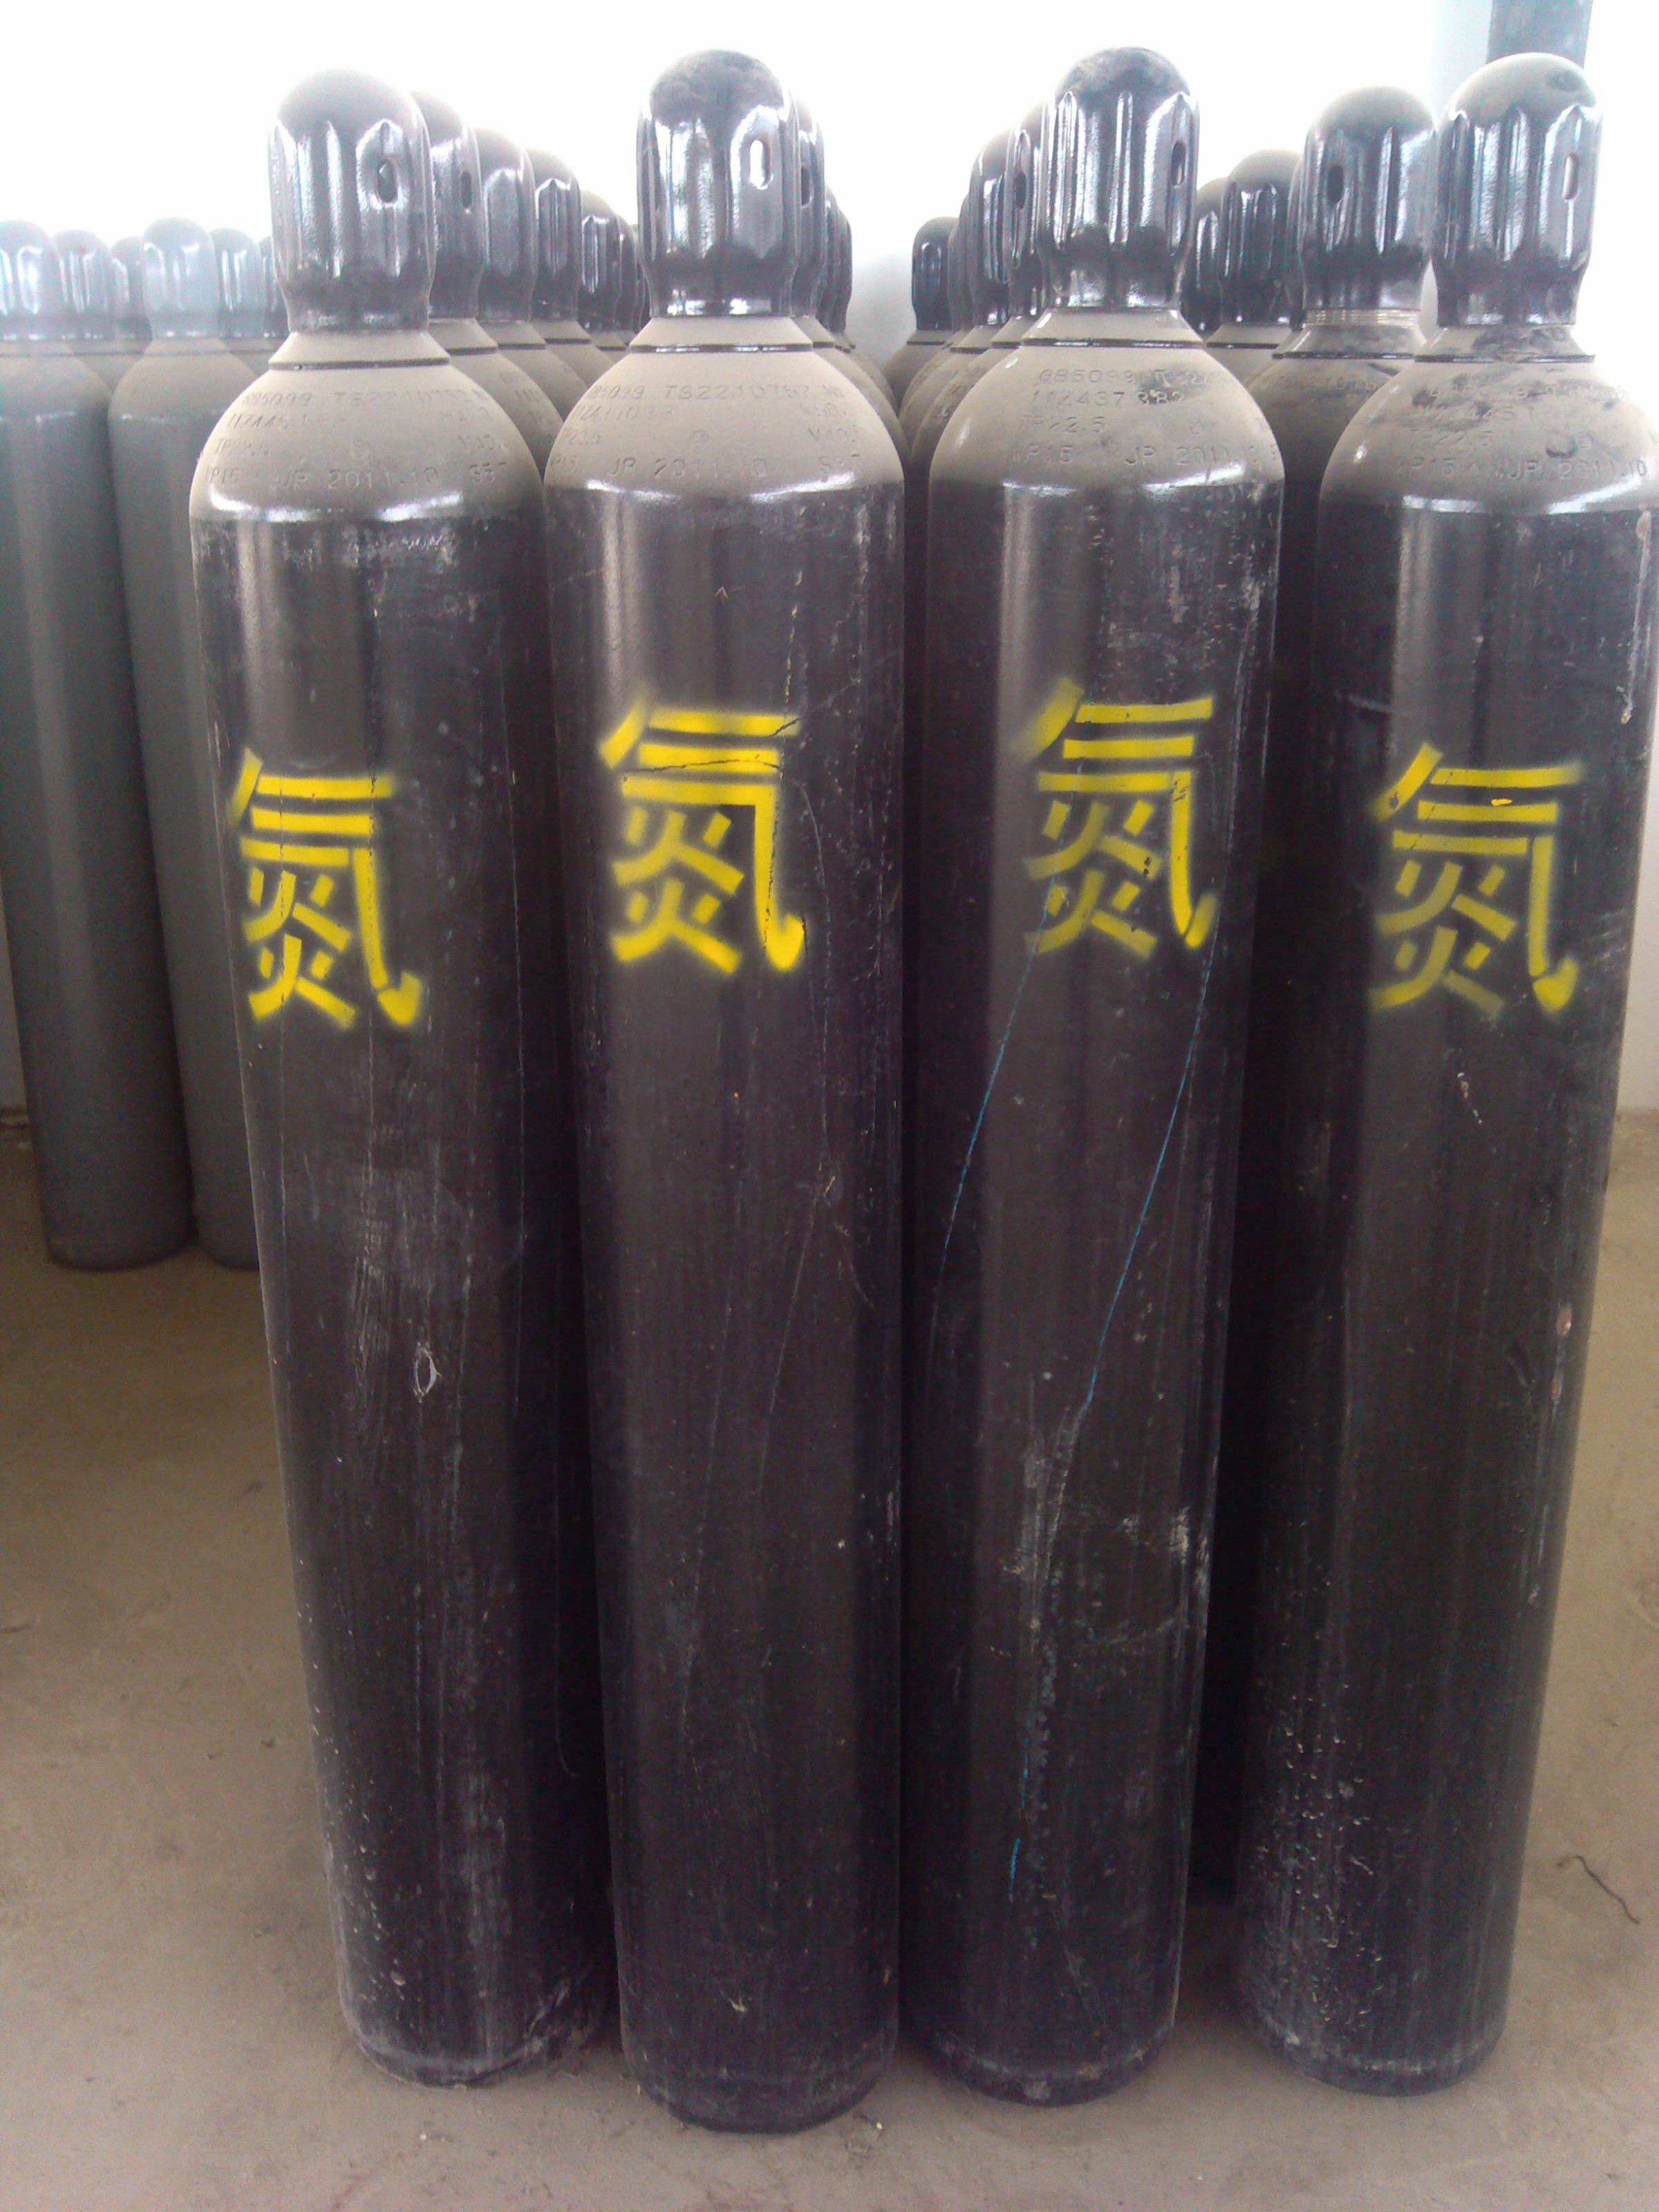 天津滨海新区送氮气 工业气体公司 利信工业气体